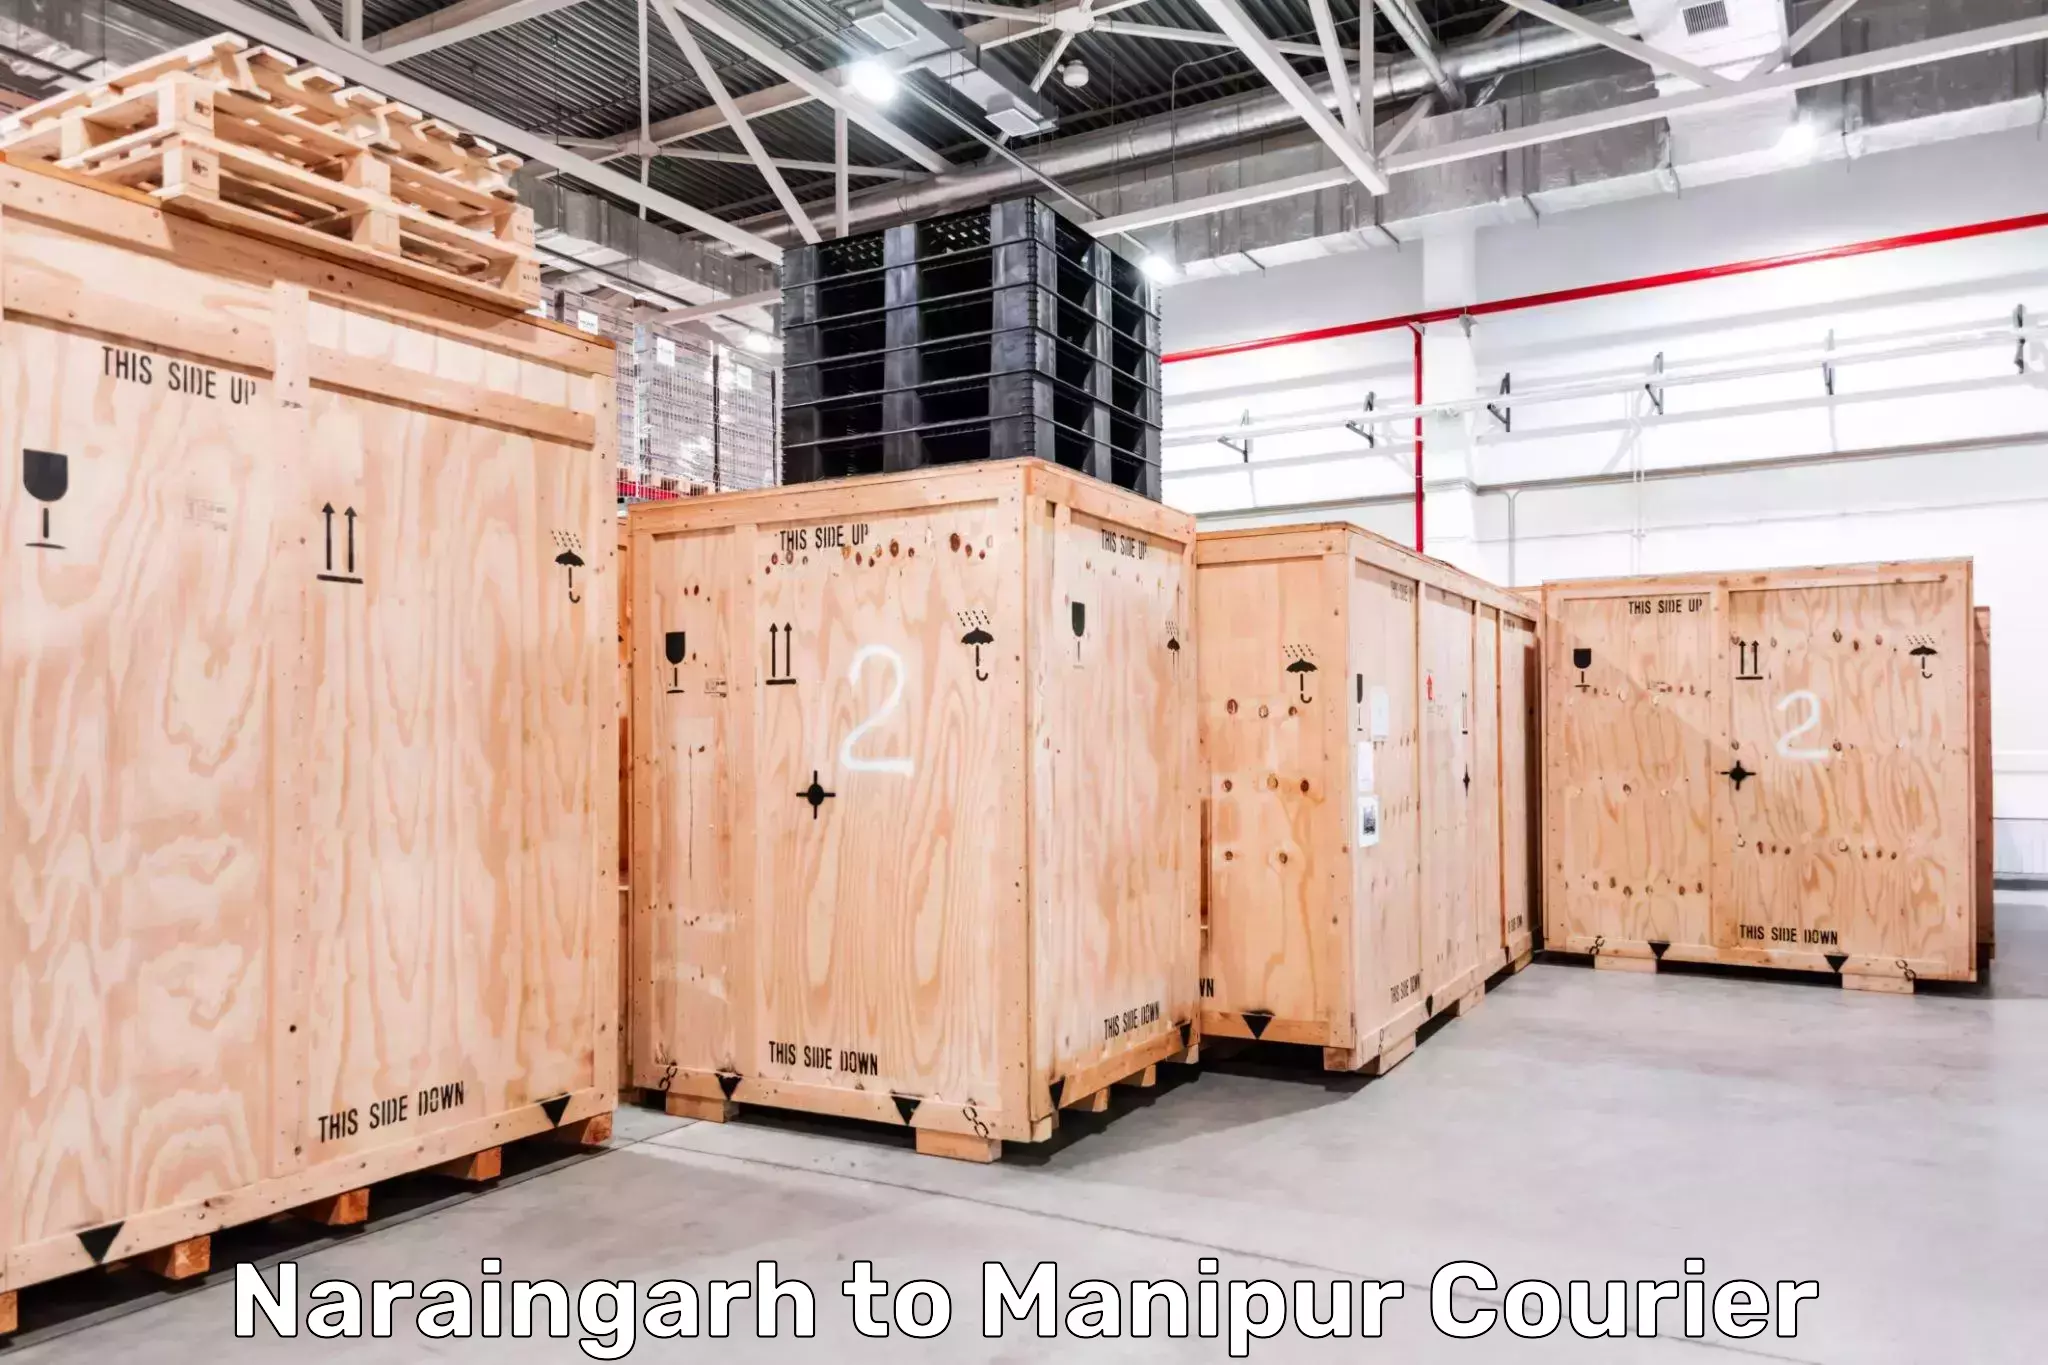 Supply chain efficiency Naraingarh to Chandel